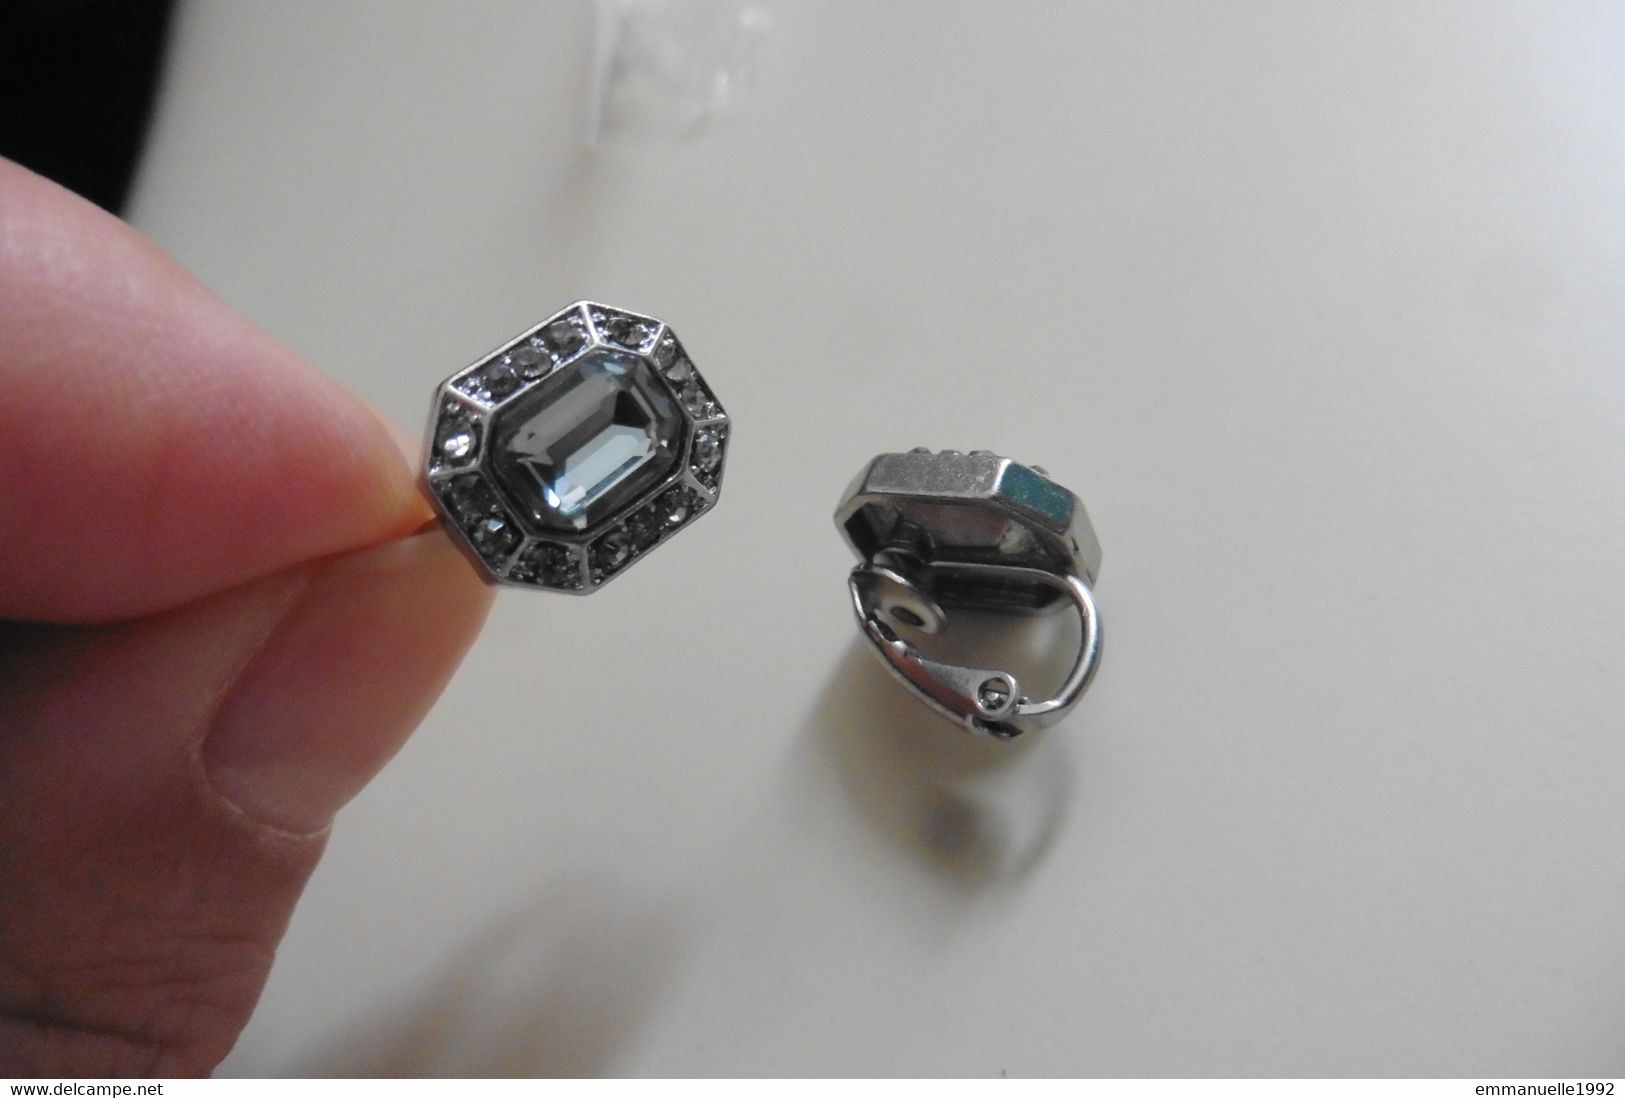 Neuf - Boucles d'oreilles clips lobes métal argenté cristaux strass transparent gris